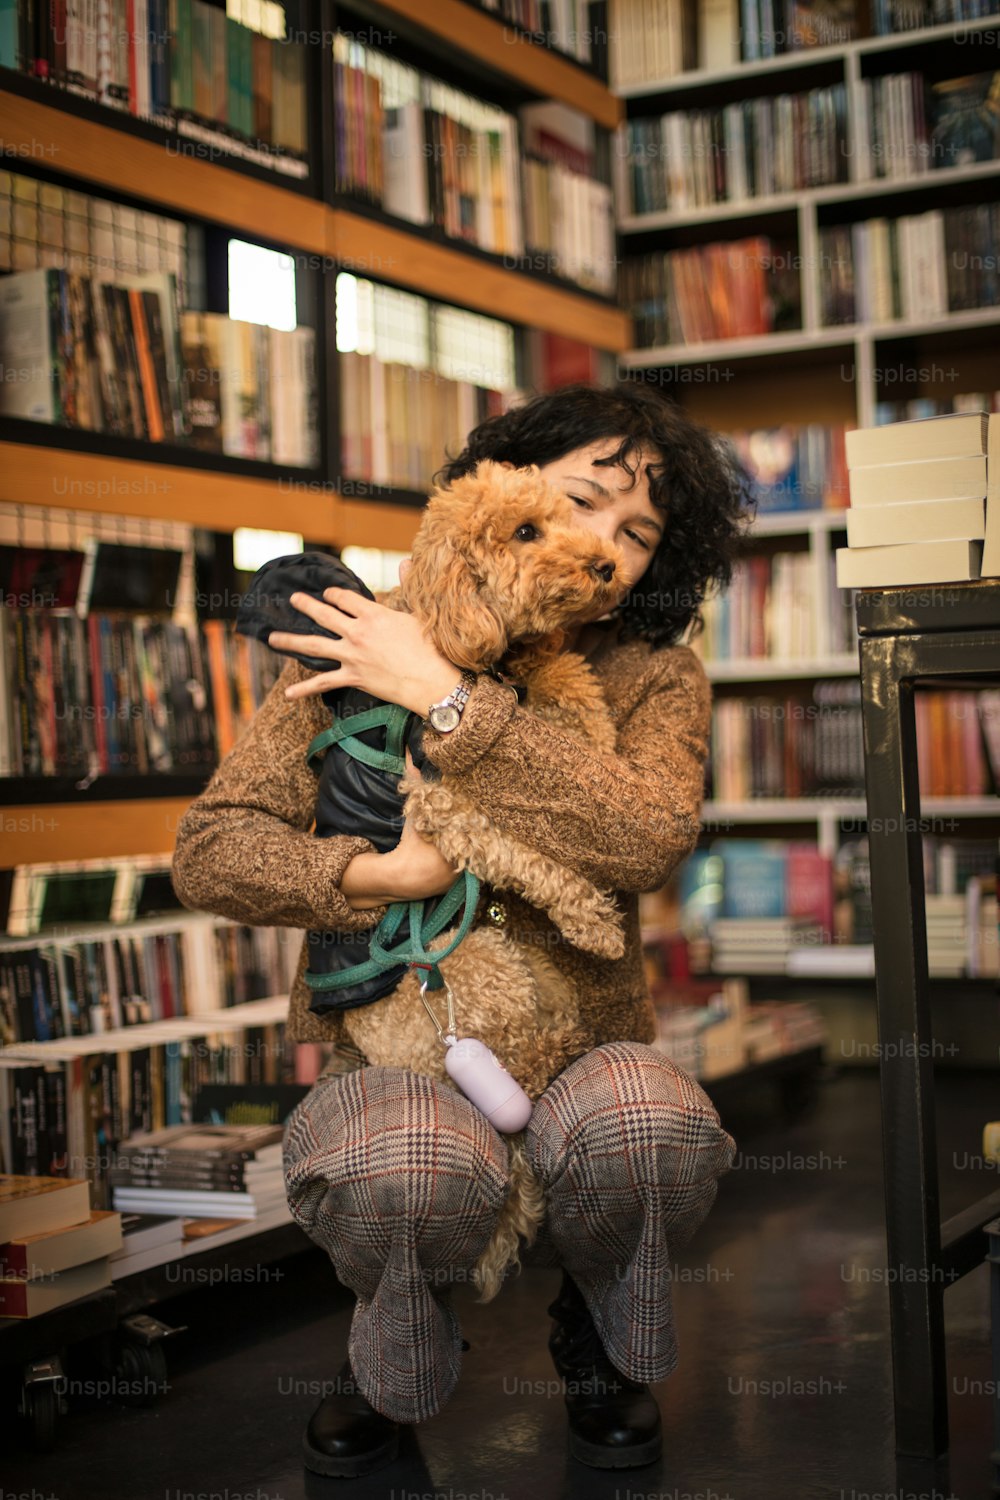 Glückliche Frau mit ihrem Hund in der Bibliothek.